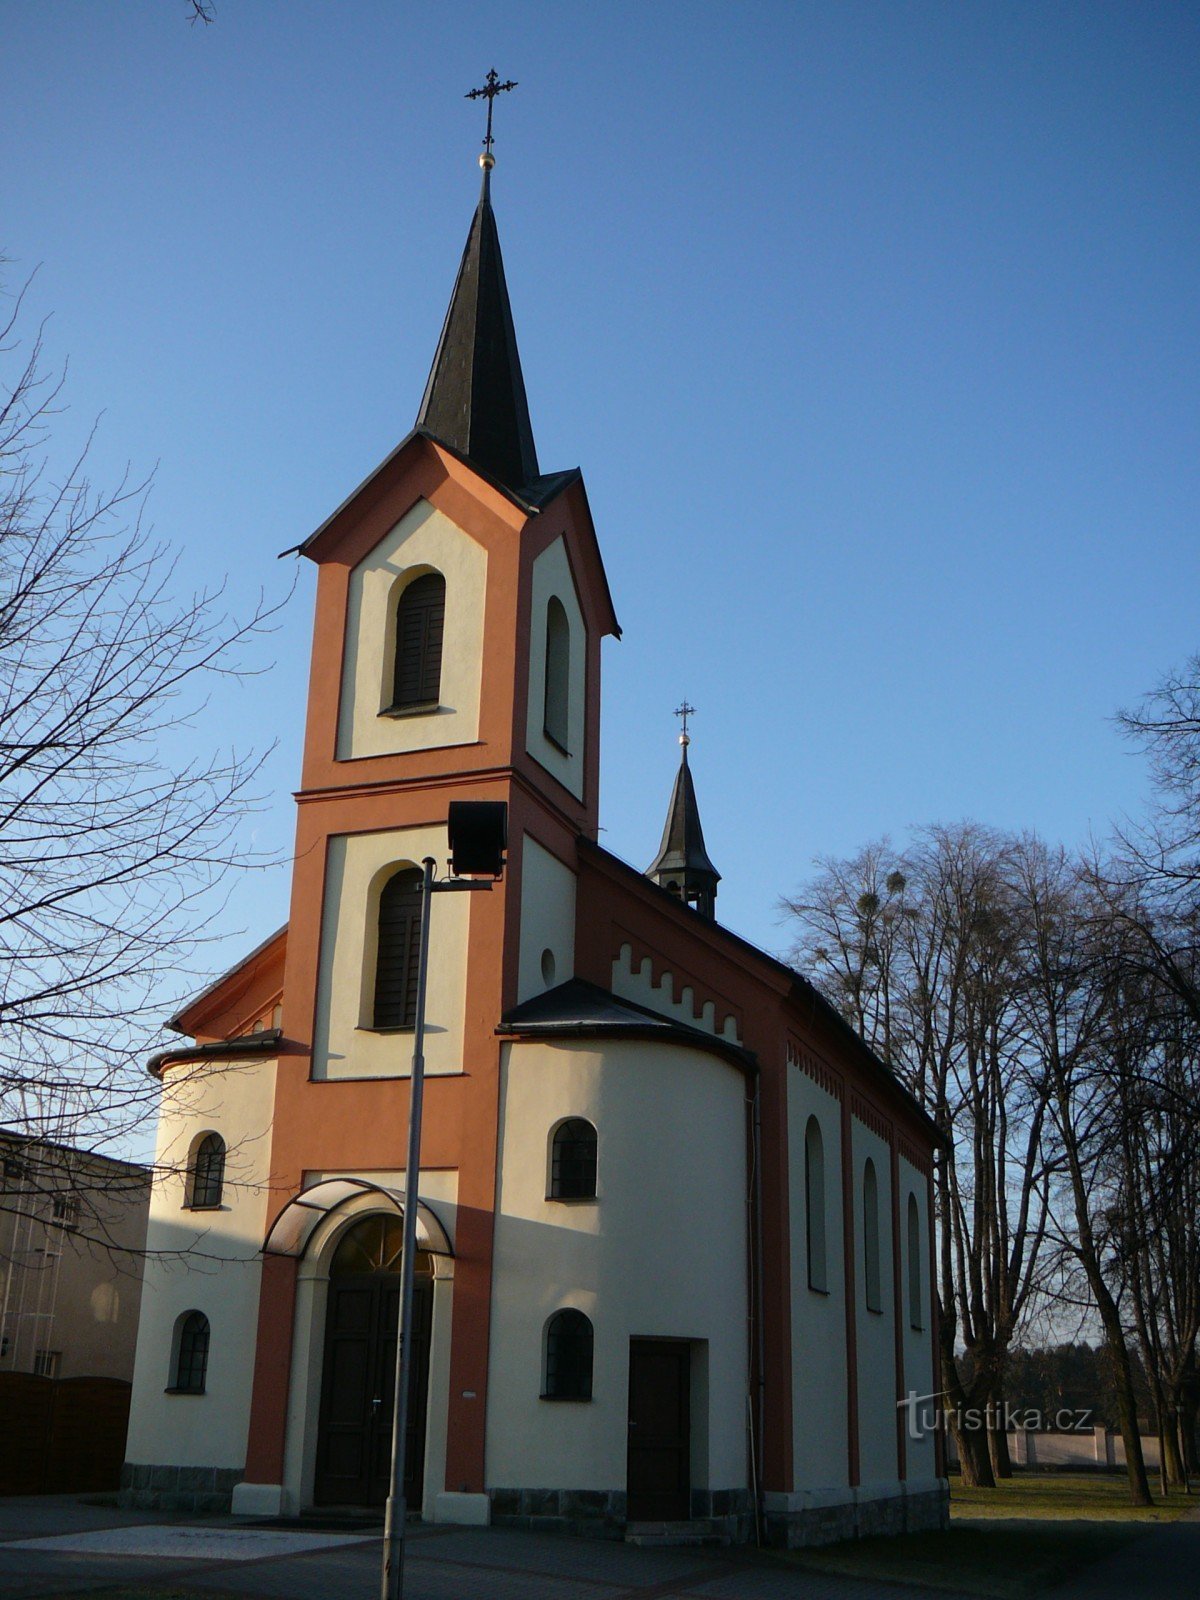 Johannes kapell av Nepomuk i Sviadnov